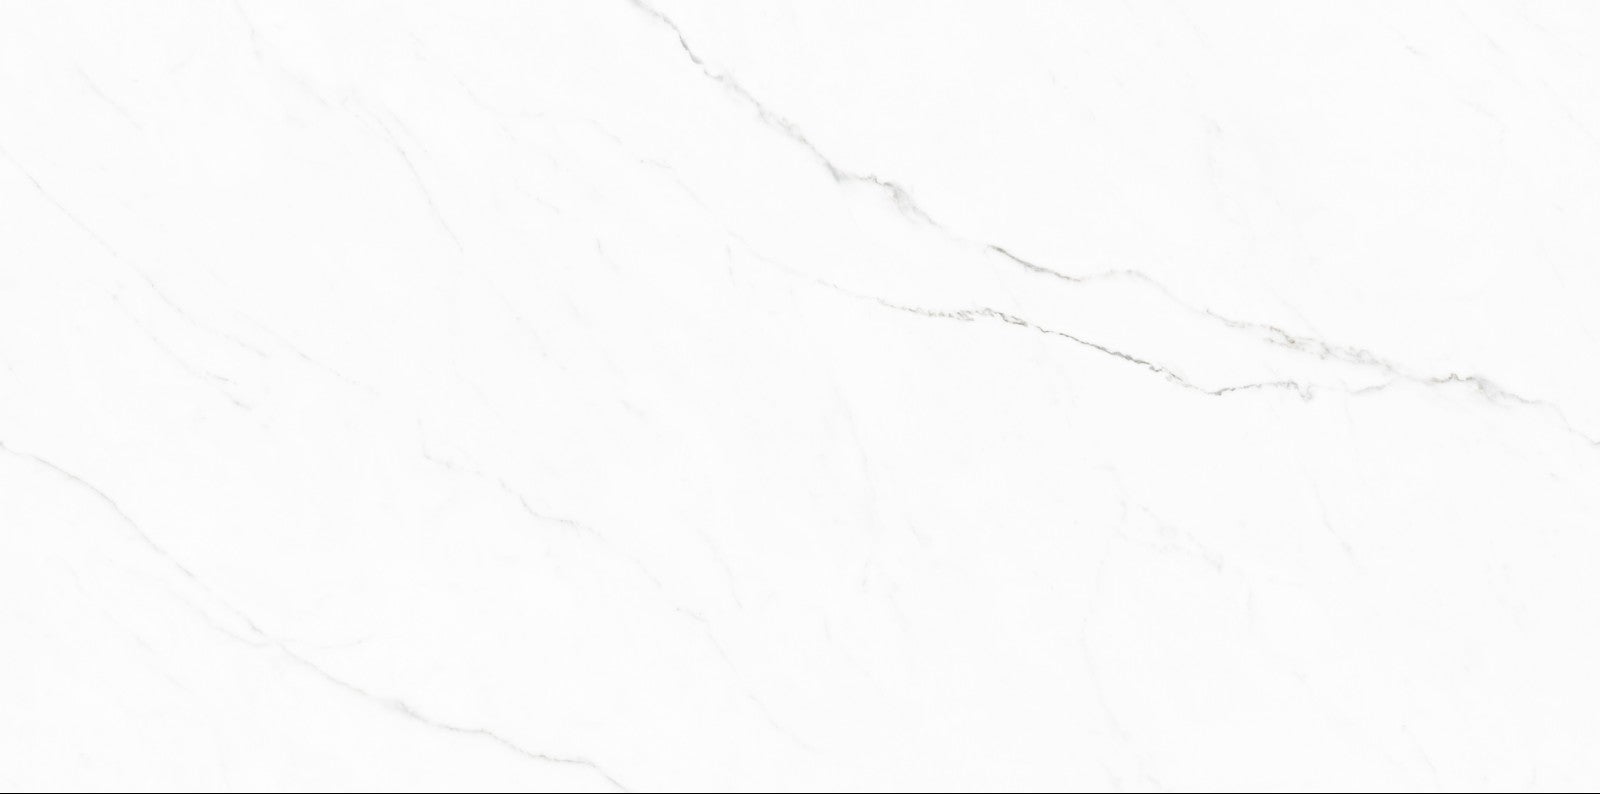 中國佛山瓷磚 China Foshan Marble Tiles Glossy 大理石瓷磚 連紋瓷磚 地磚 墻磚 釉面磚 亮光面 白水晶TC126308 60×120cm